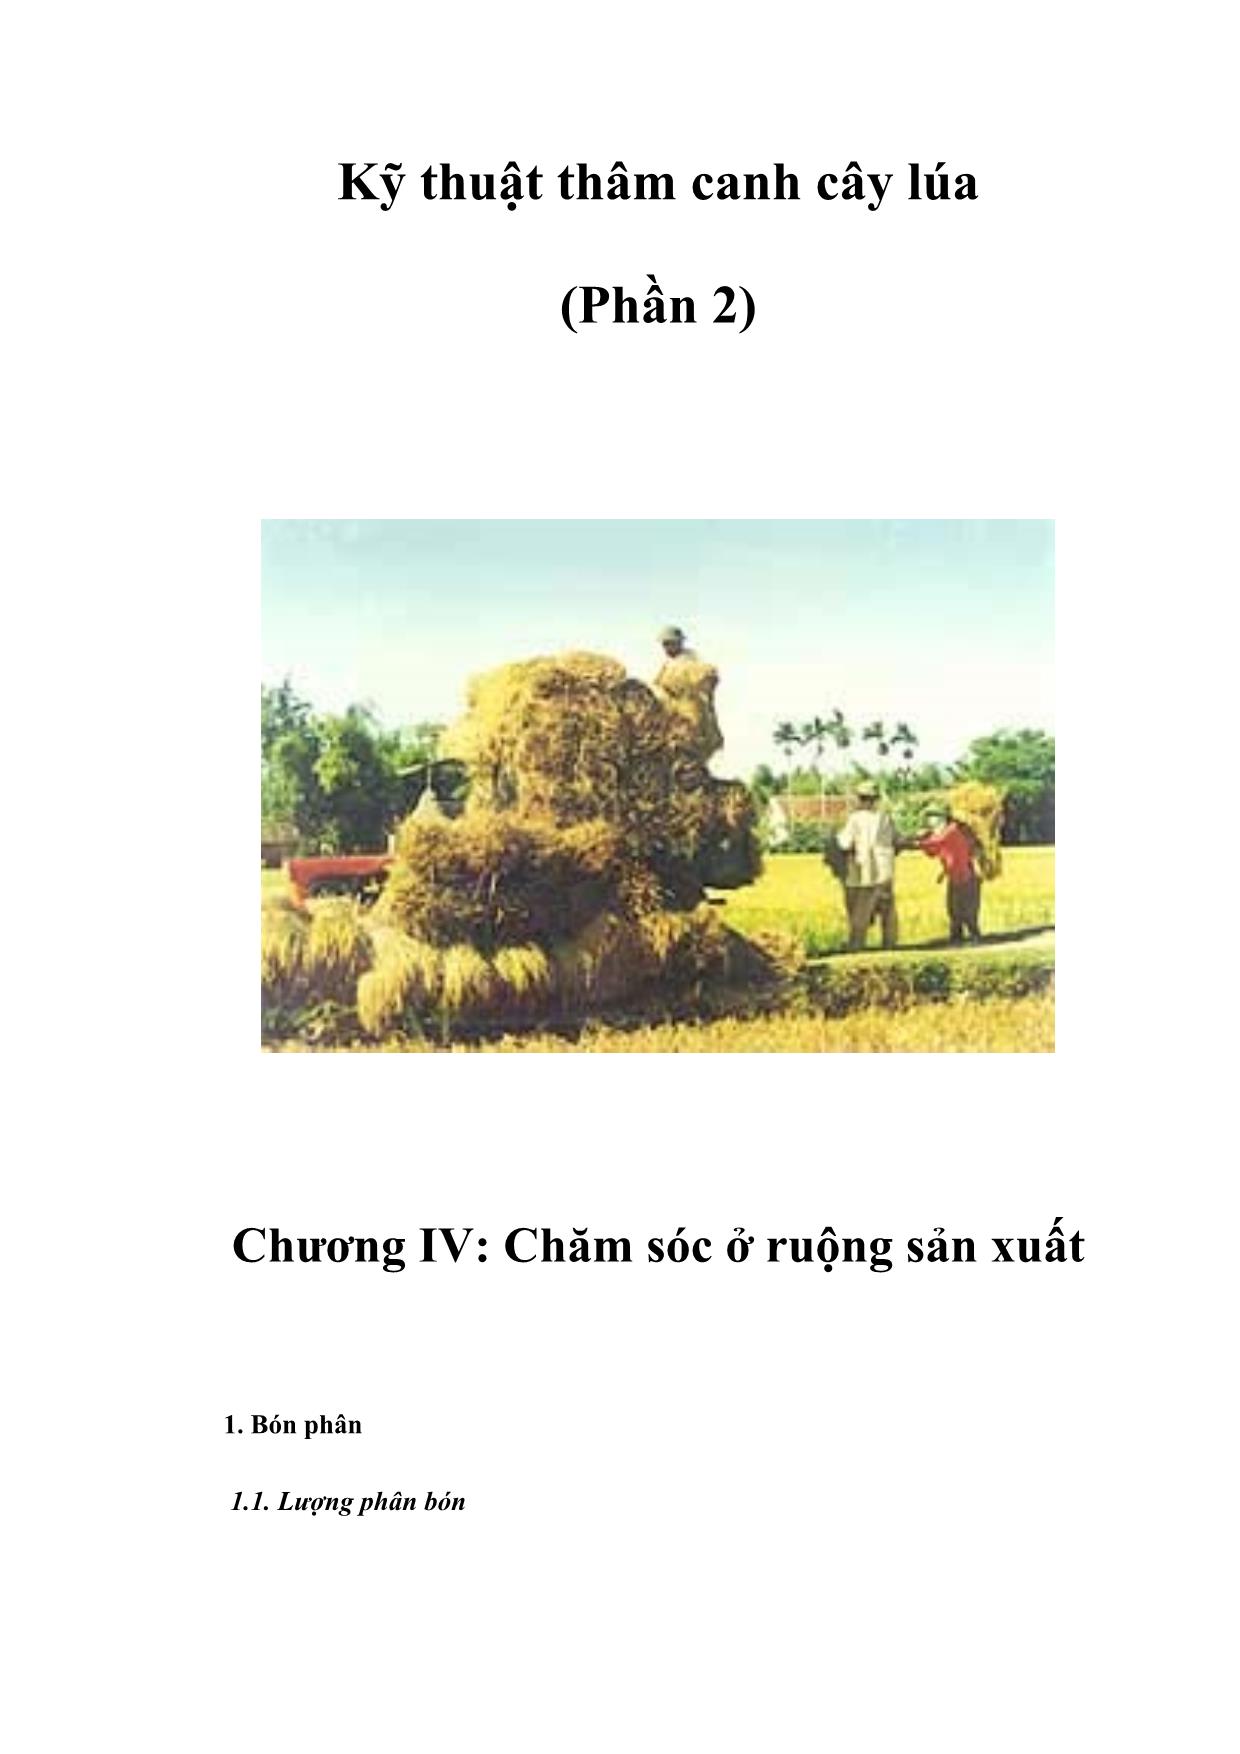 Kỹ thuật thâm canh cây lúa (Phần 2) trang 1